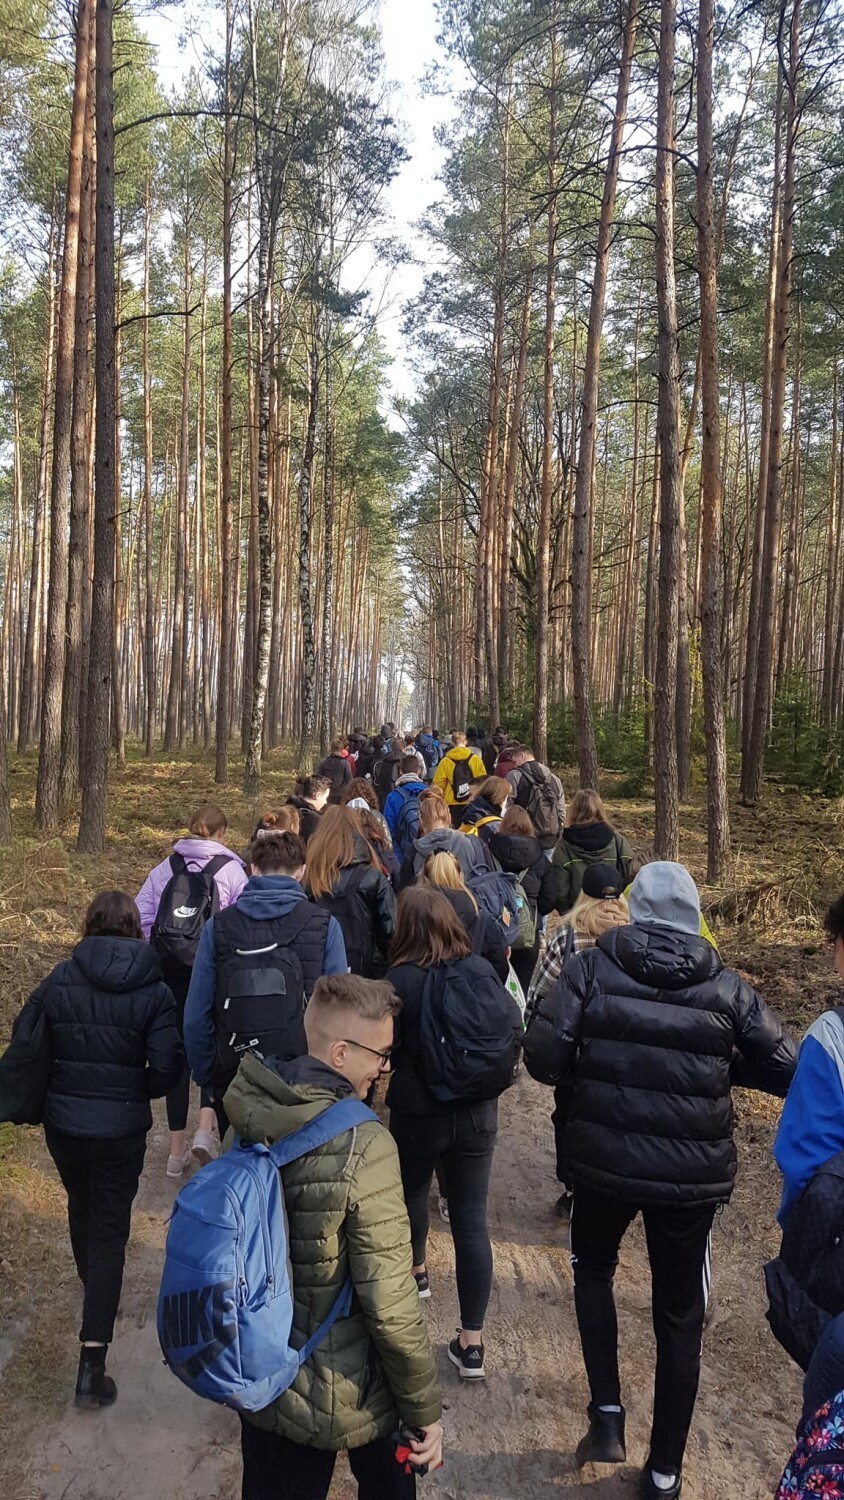 Wieluńska młodzież posadziła hektar sosnowego lasu FOTO